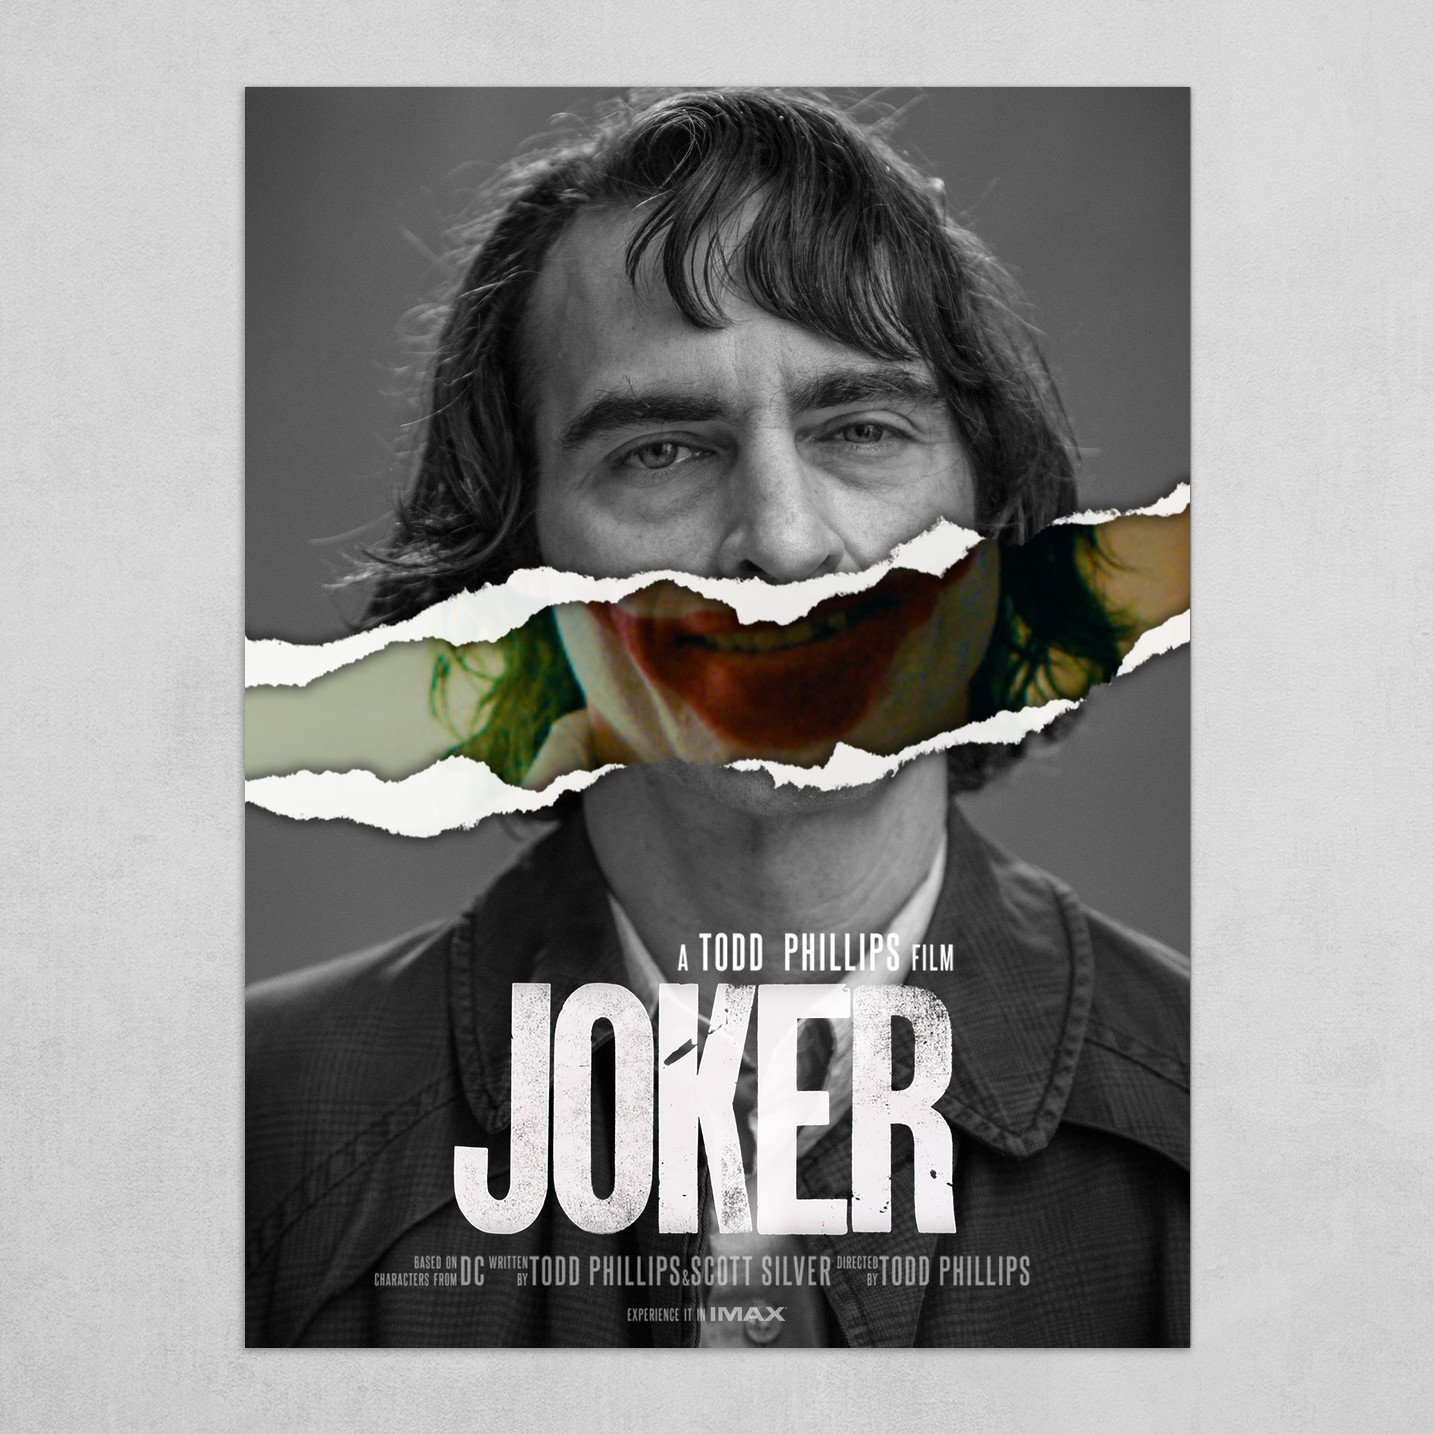 The joker movie